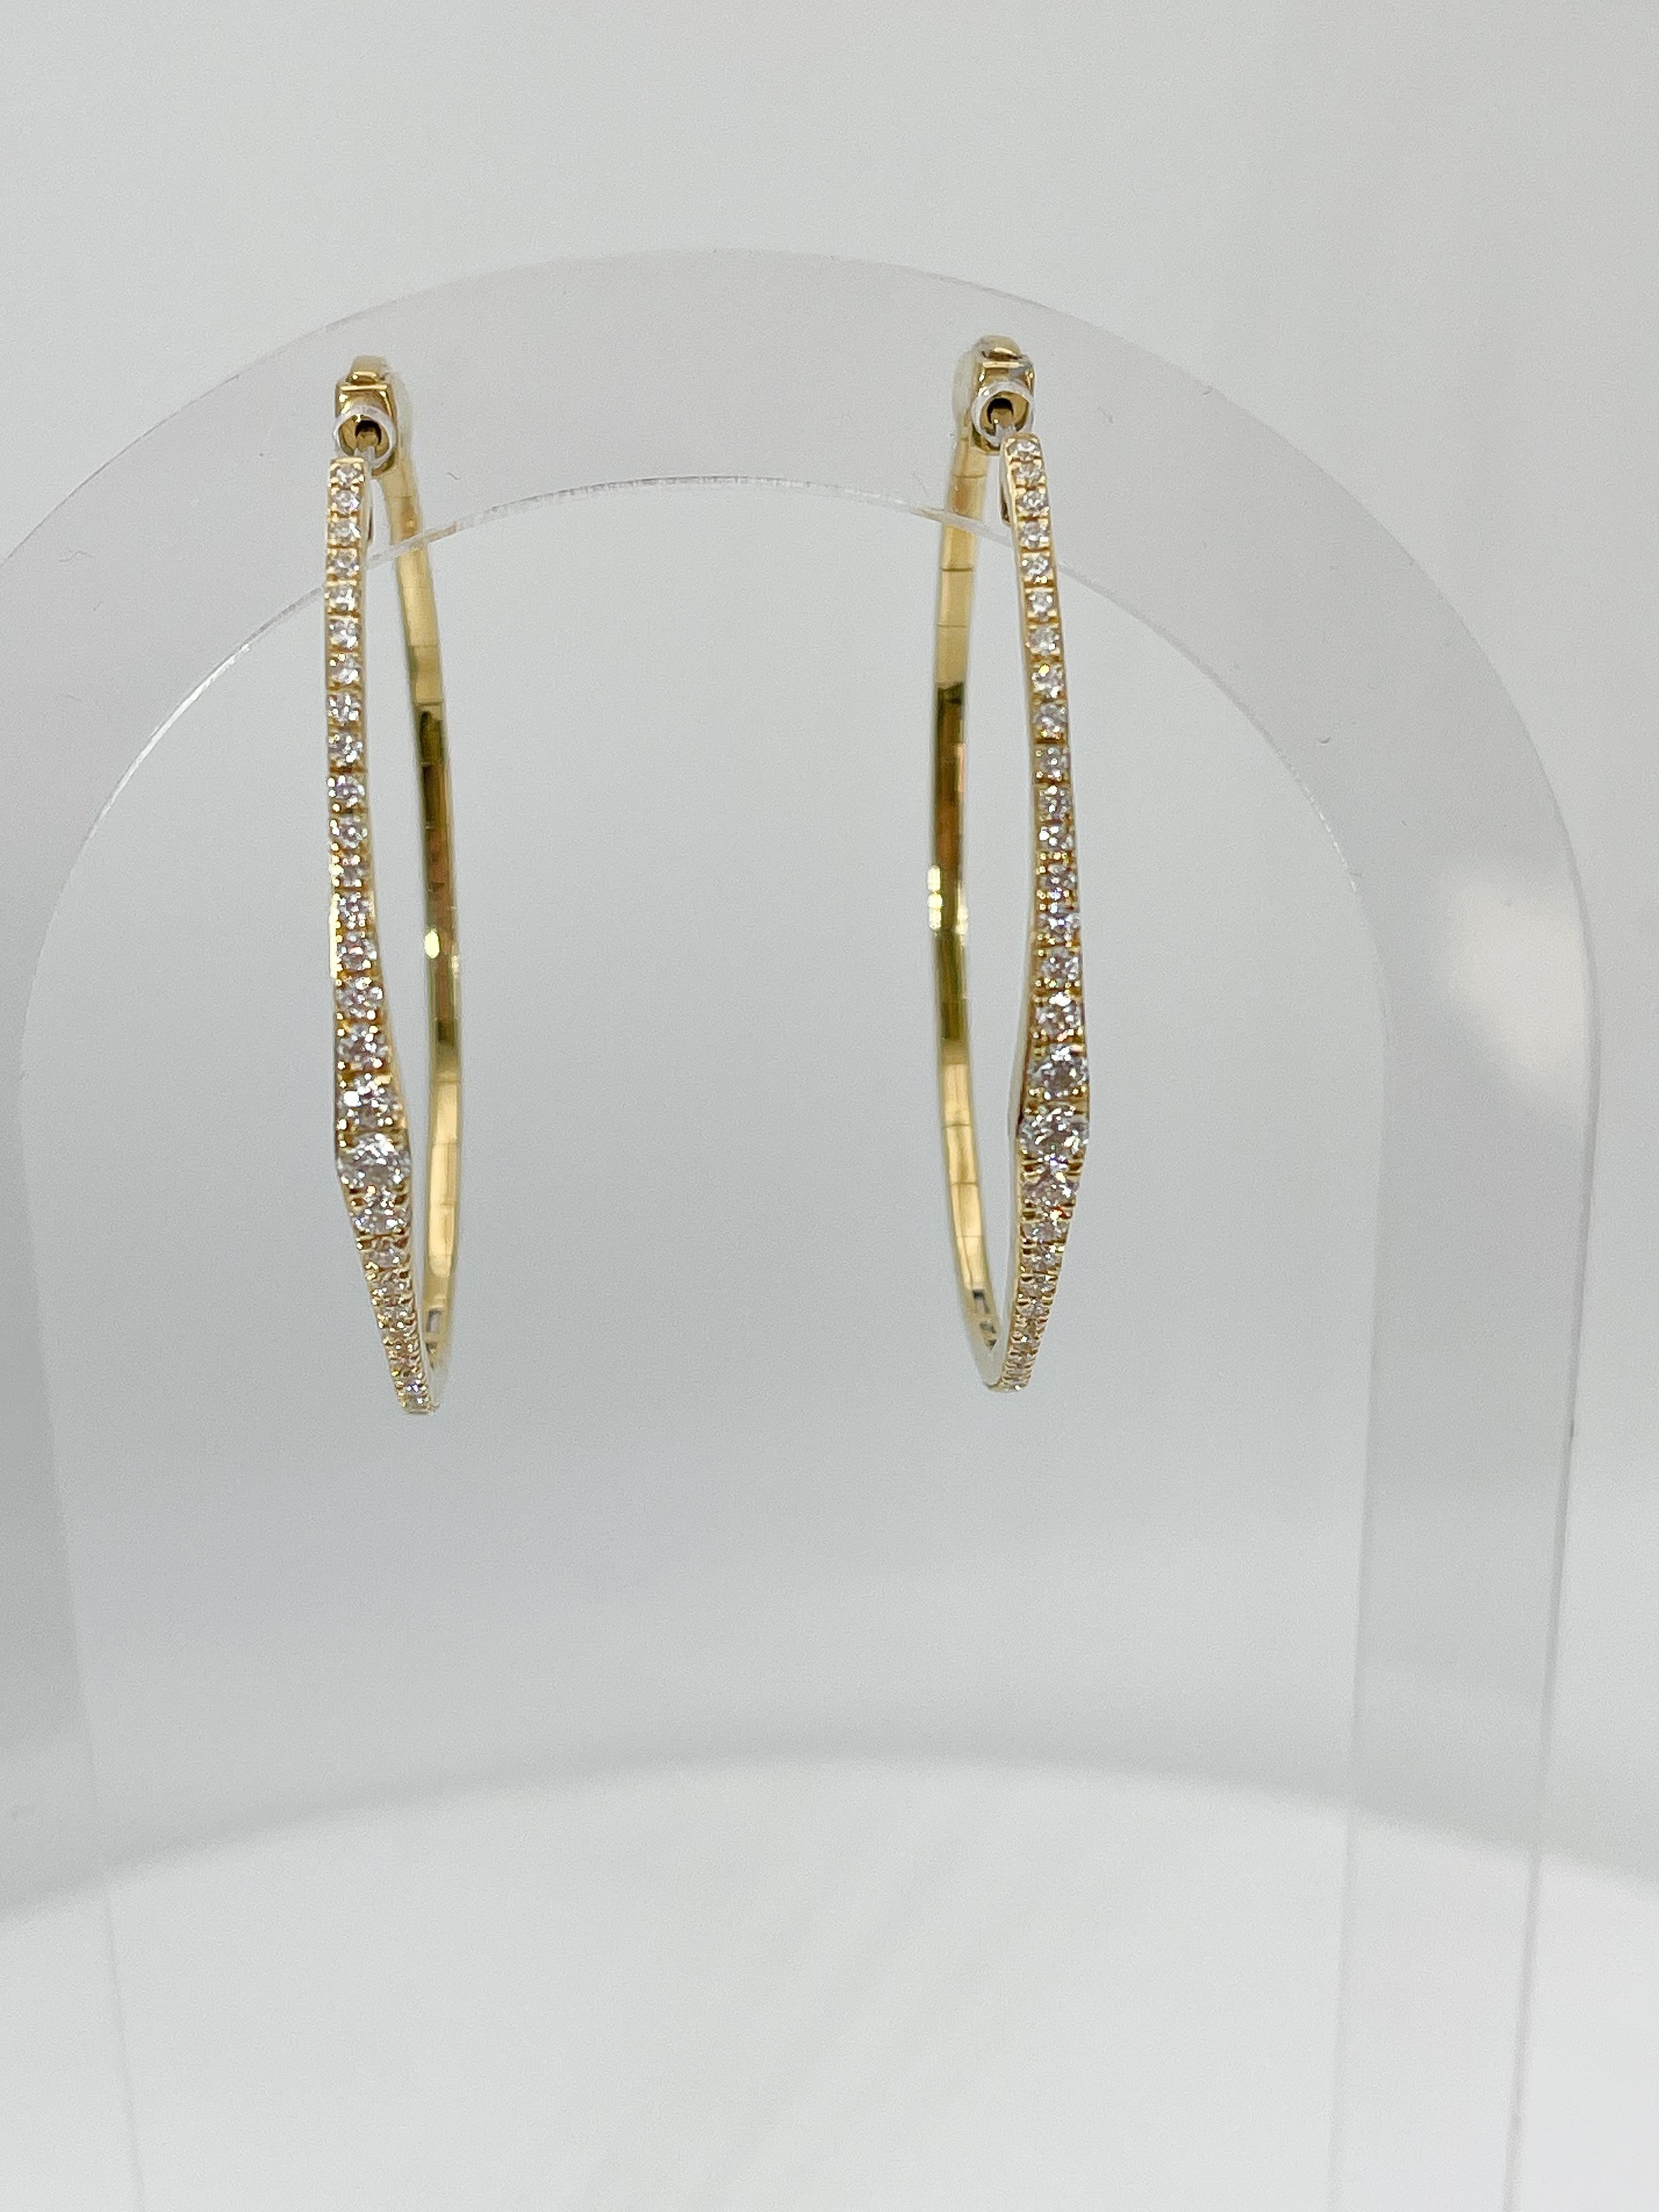 Simon G 18 Karat Gelbgold 1,16 CTW Diamantreifen. Die Diamanten in diesen Ohrringen sind rund, die Maße sind 44,6 x 39,5 mm und sie haben ein Gesamtgewicht von 10,3.
Teilenummer- LE4651